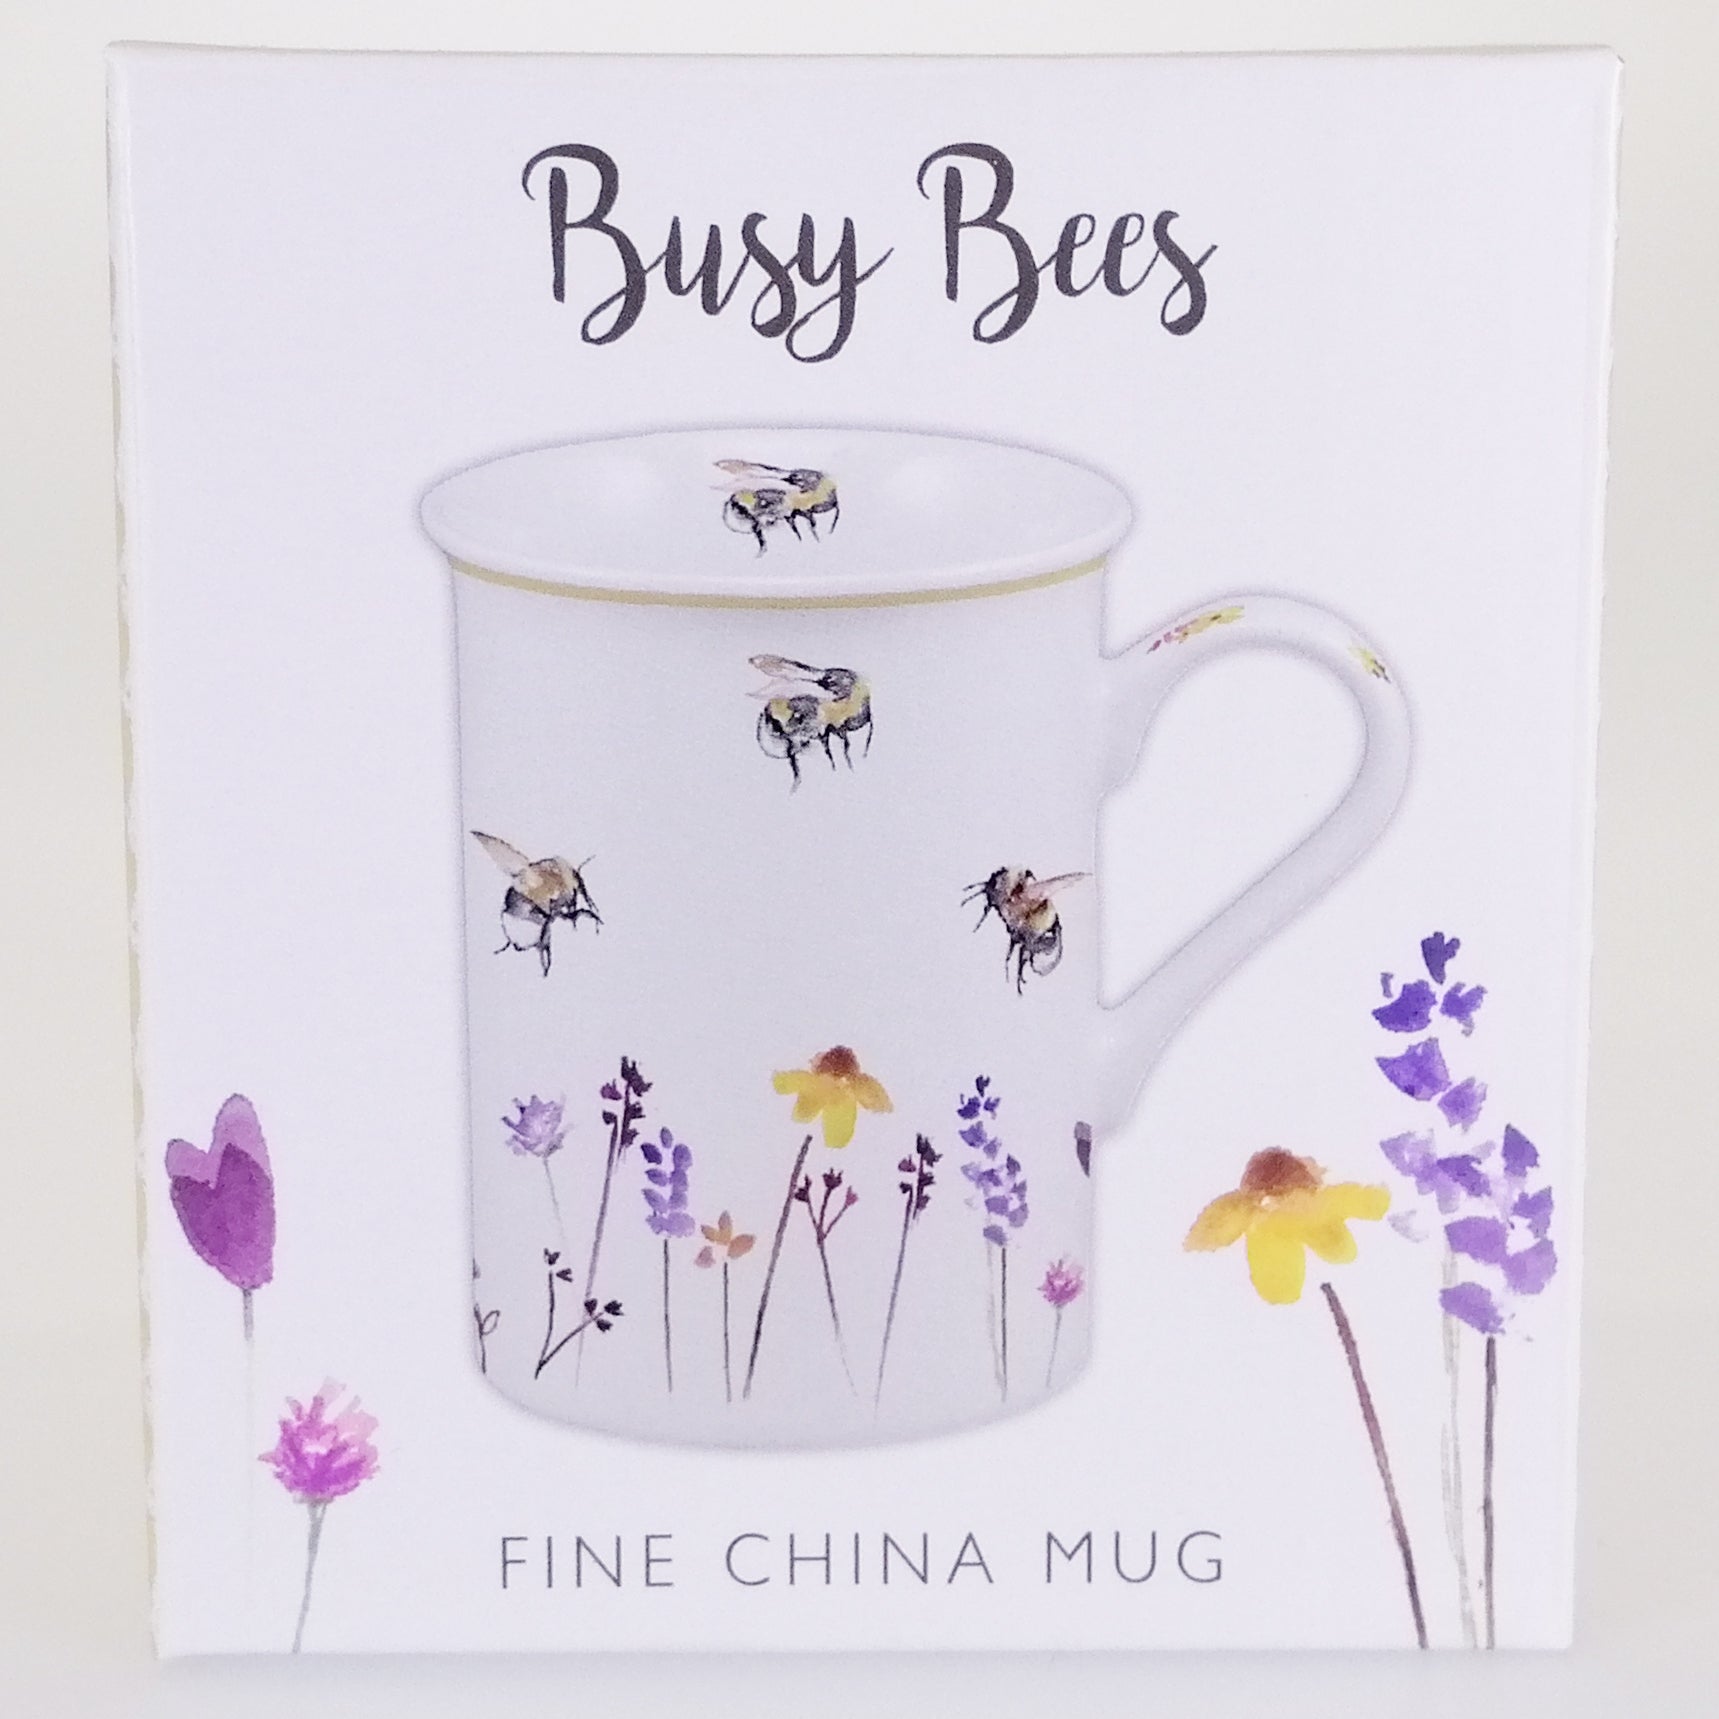 Busy Bee Boxed China Mug